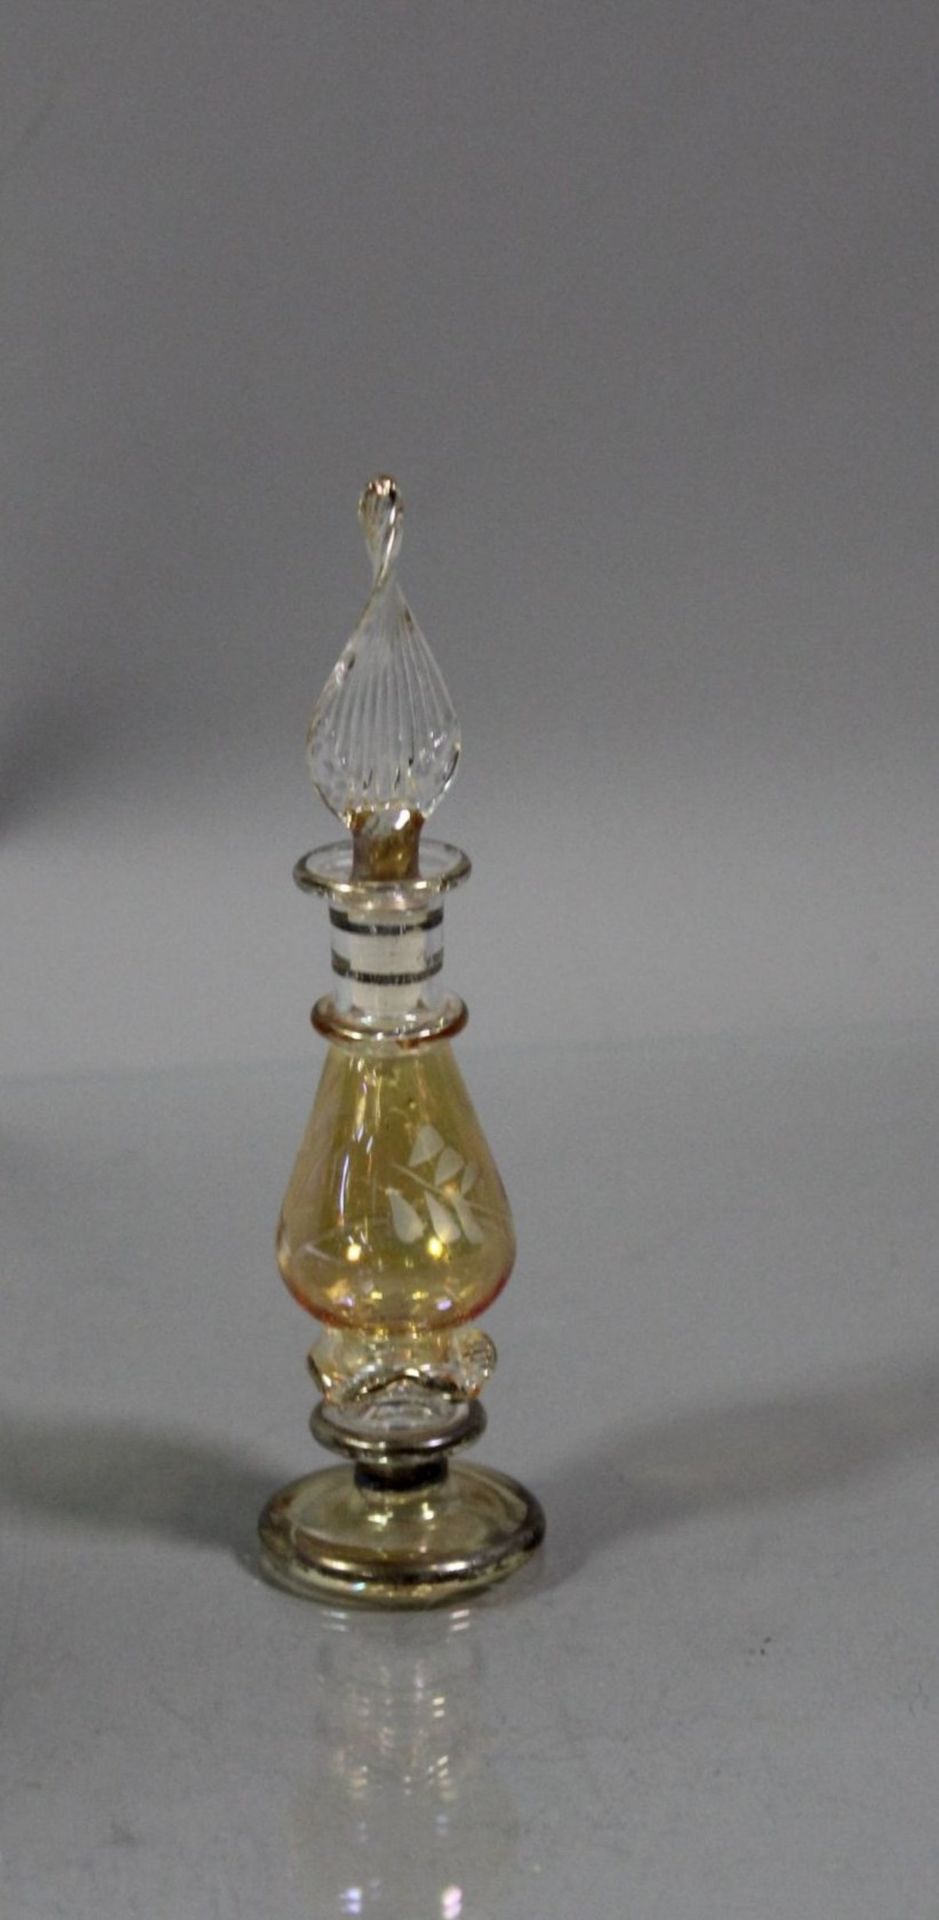 zwei gläserne Parfum-Glasphiolen. Unbeschädigt. Maße: Kleine Phiole 10cm, große Phiole 25cm. - Image 3 of 3